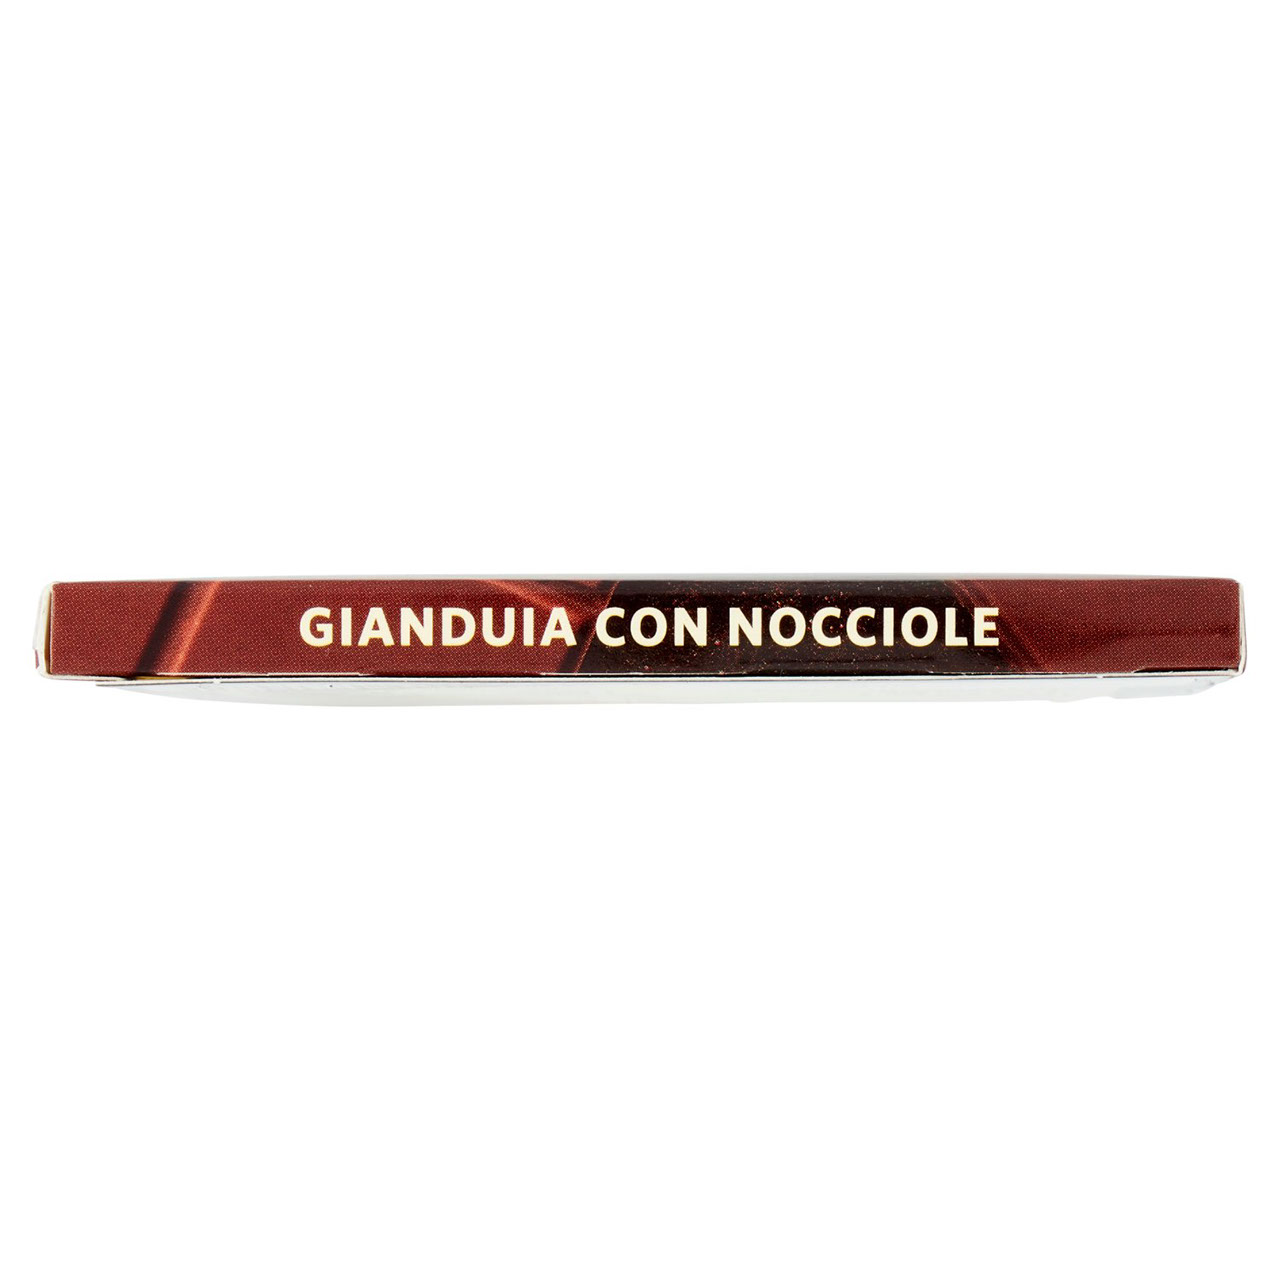 SAPORI & IDEE CONAD Gianduia con Nocciole 100 g